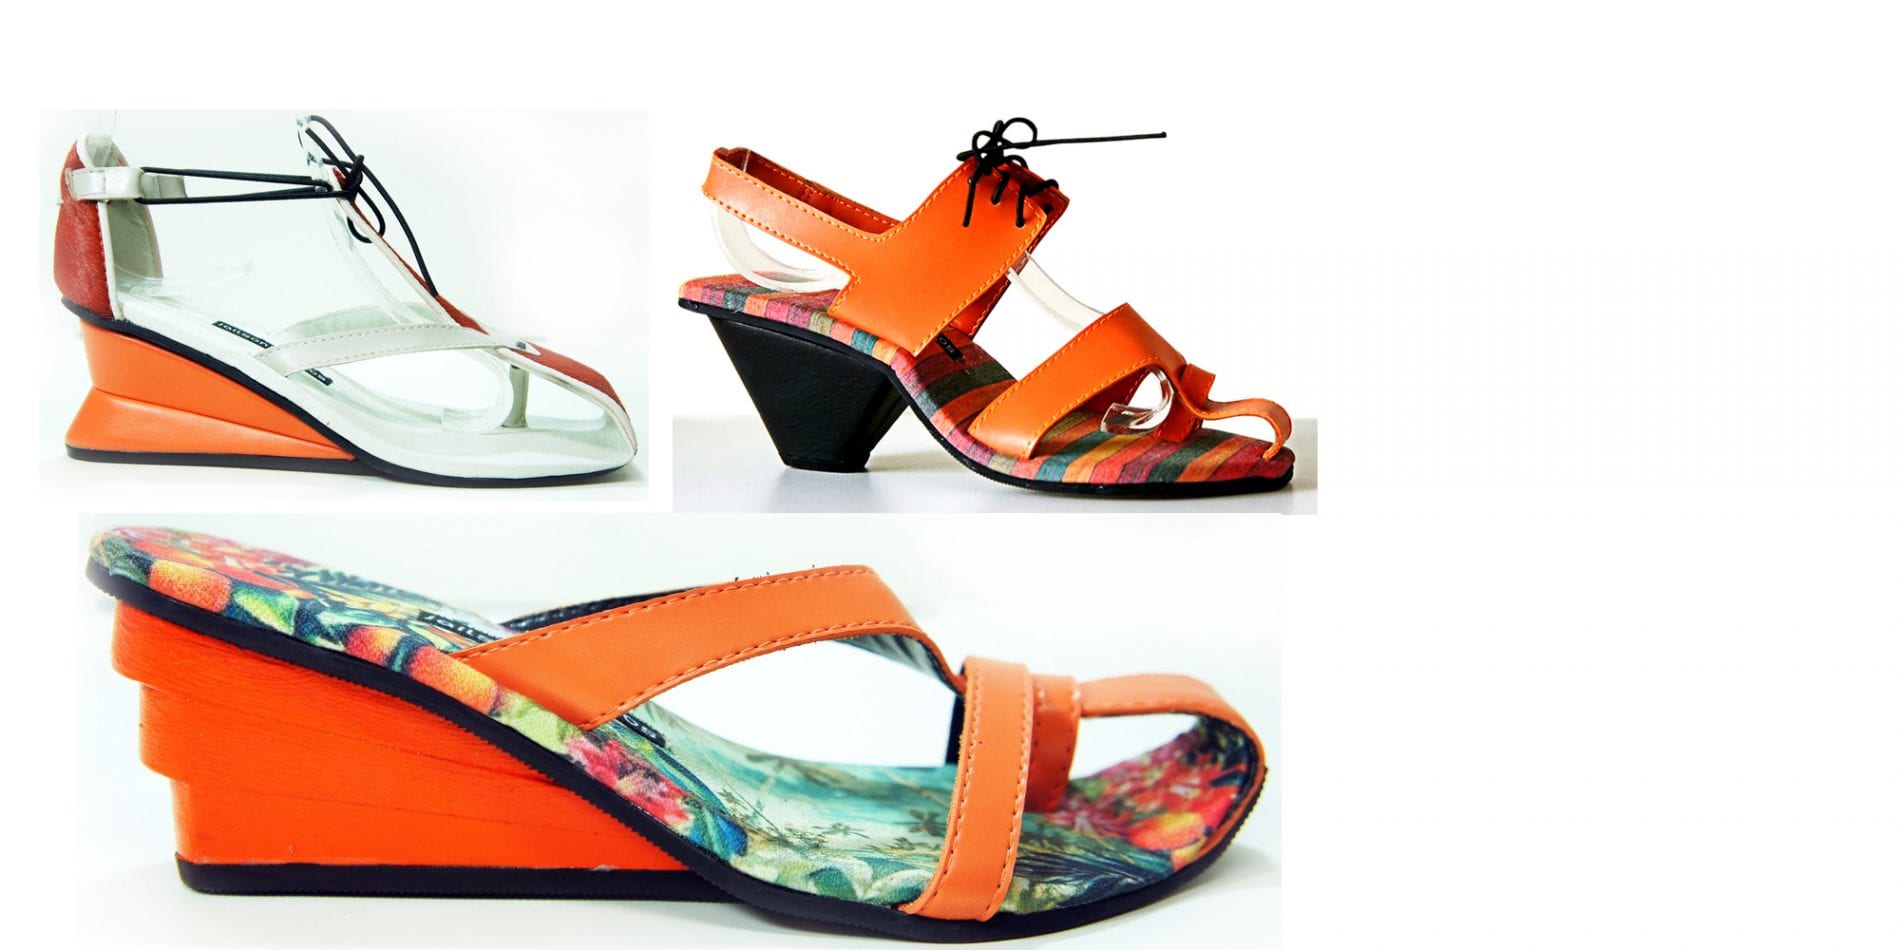 Amostra da coleção: o tom laranja está presente nos couros e nas estampas das sandálias